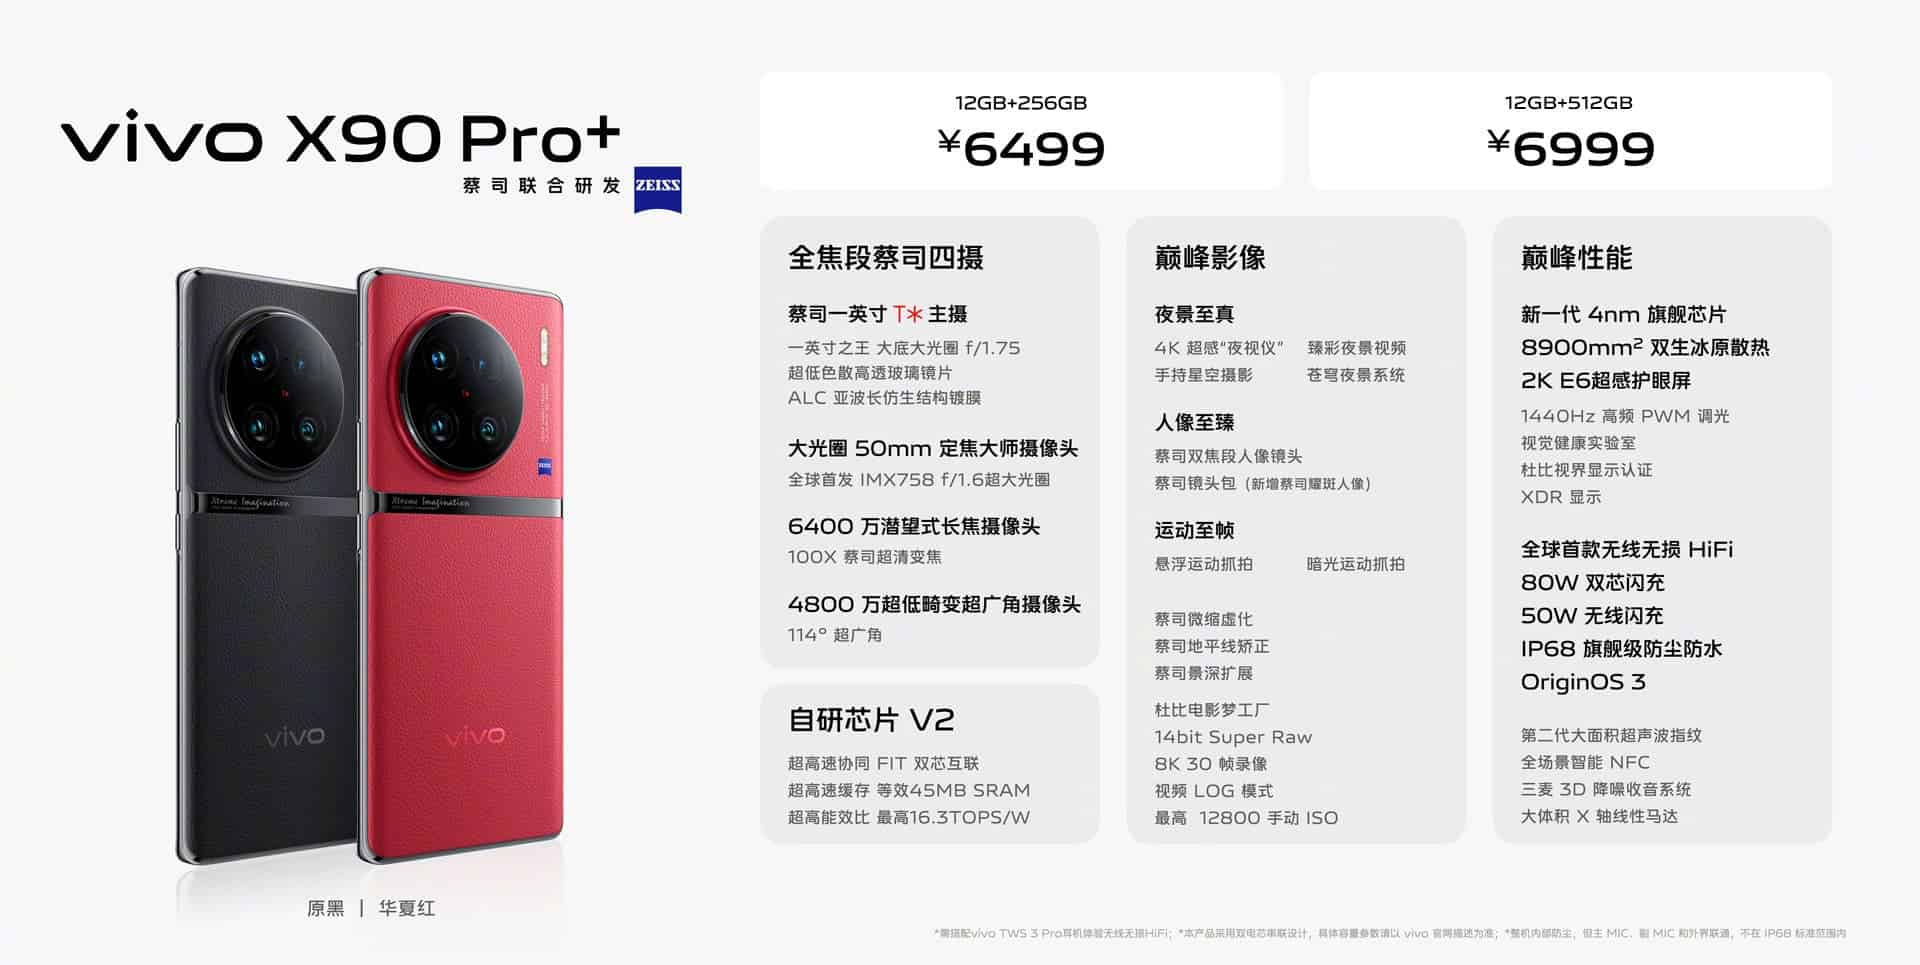 Precios VIVO X90 Pro+